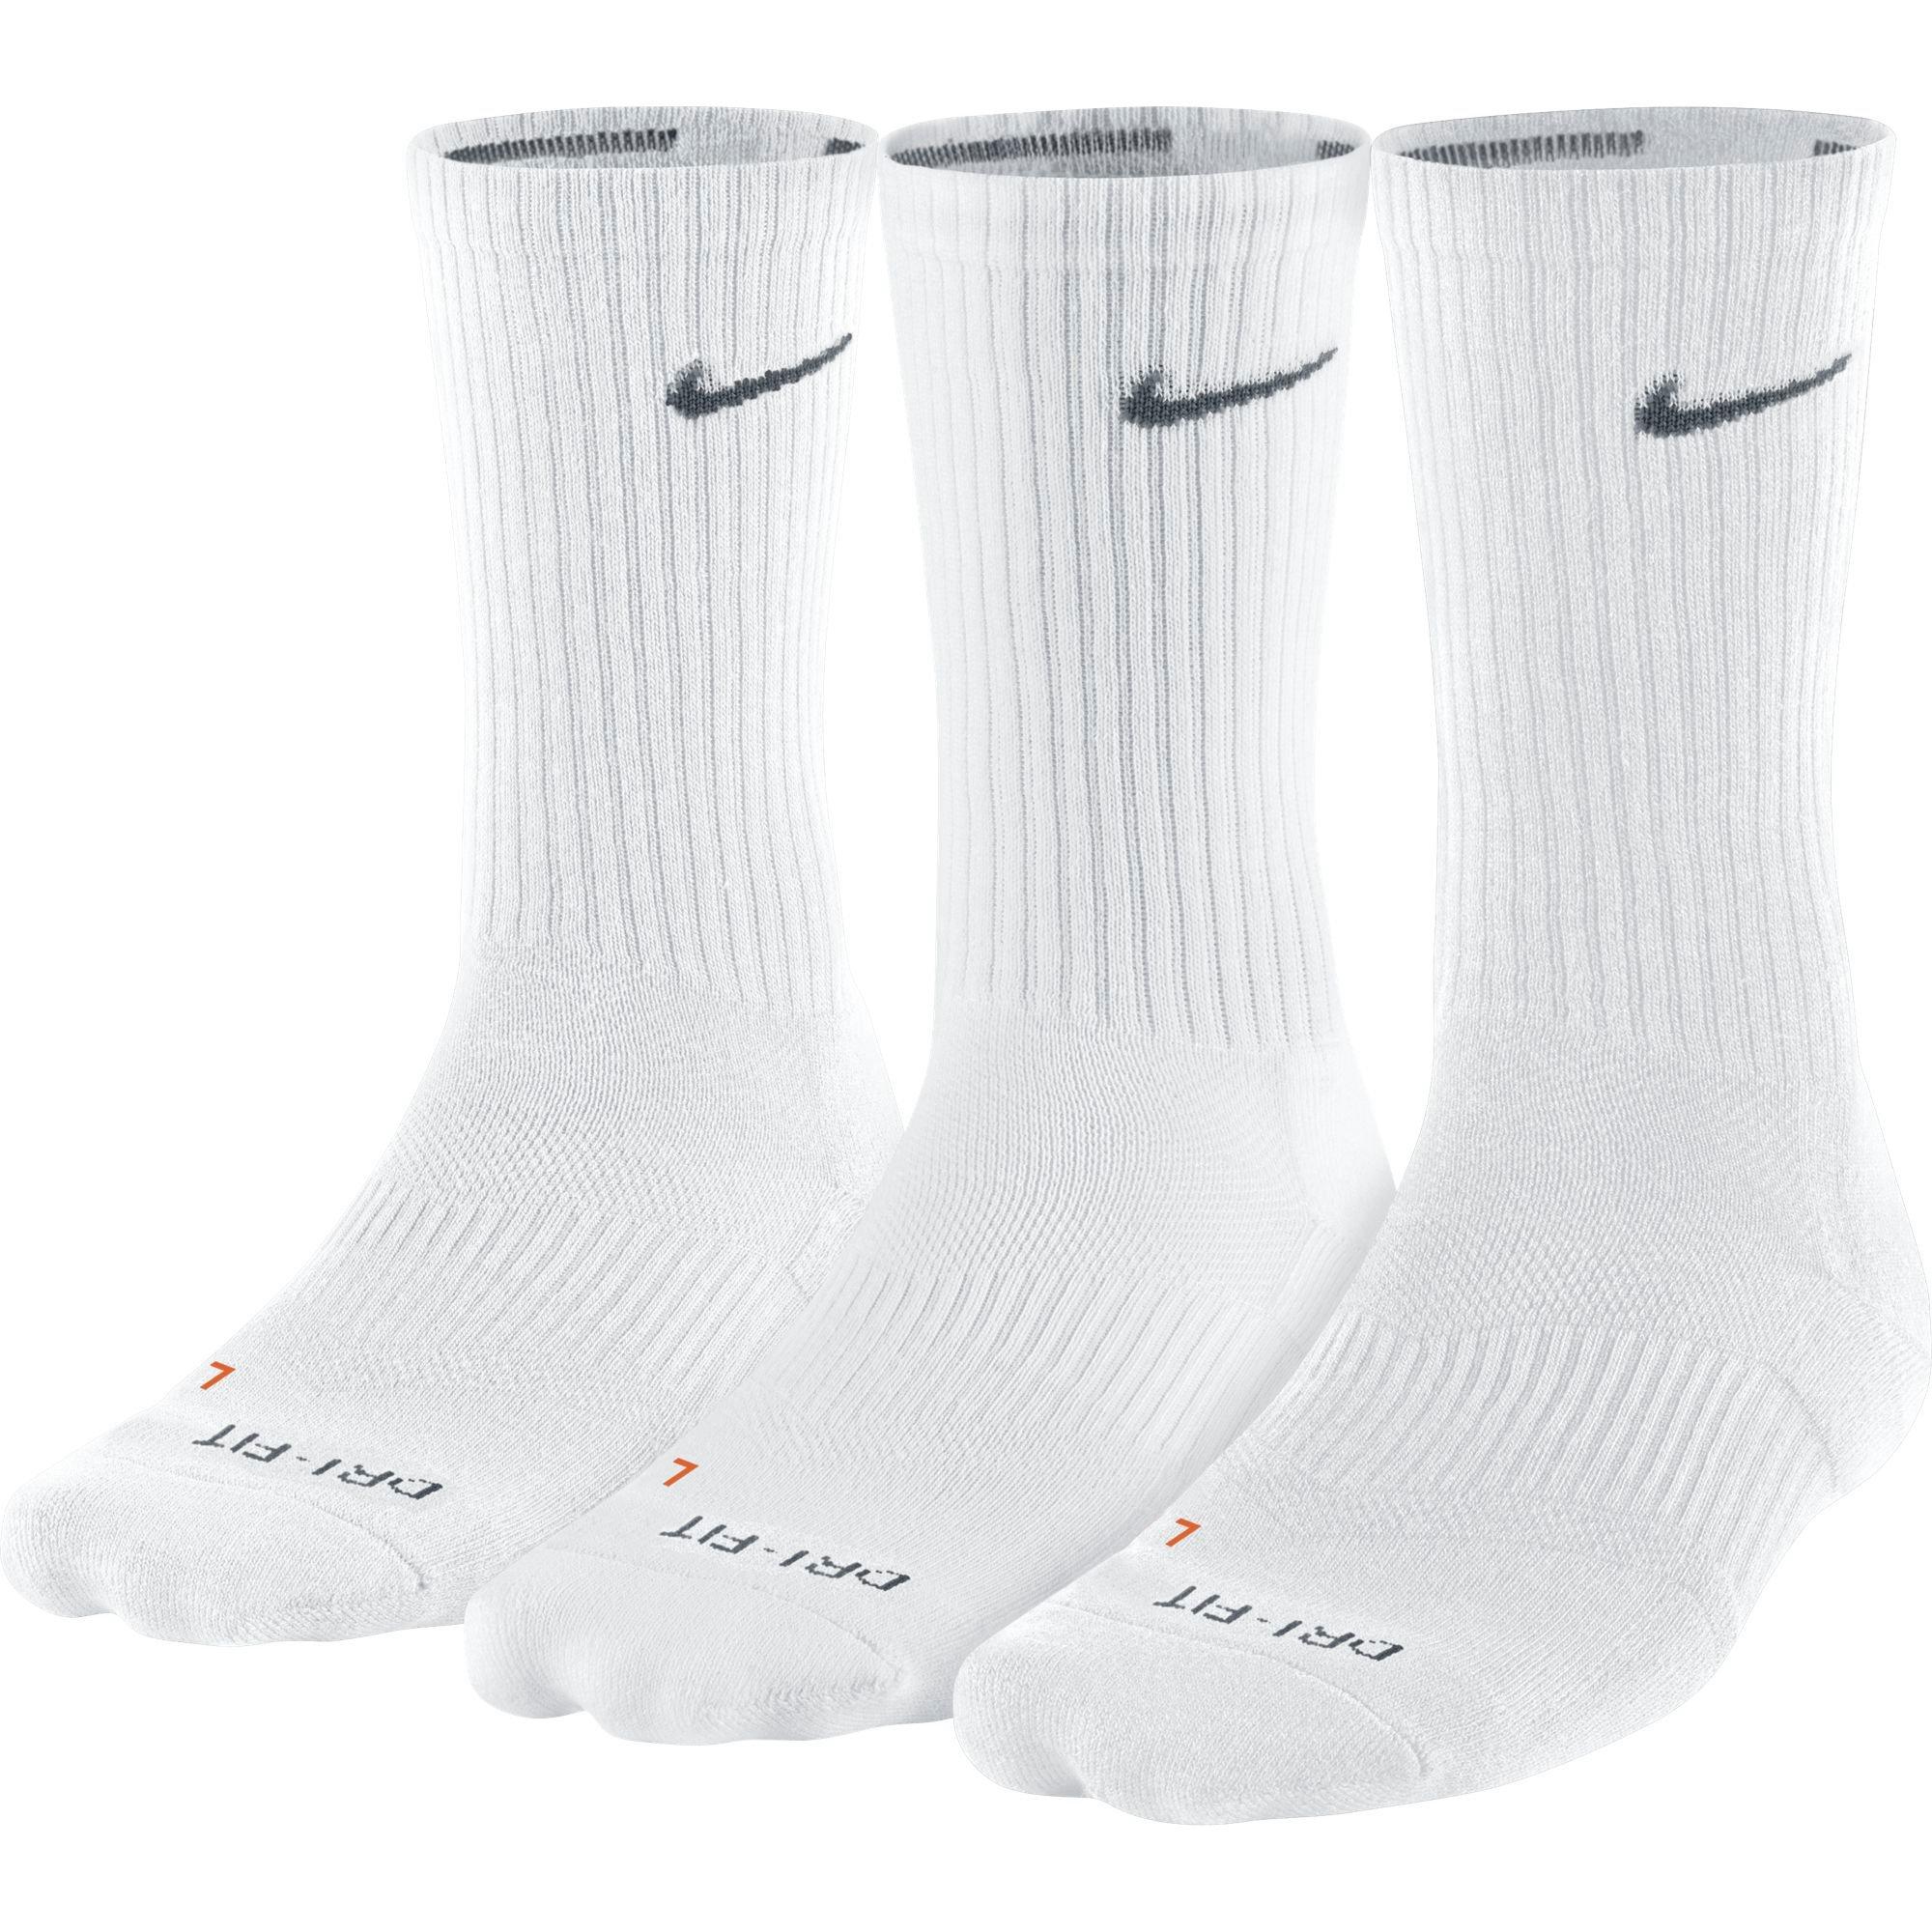 hibbett sports nike socks 